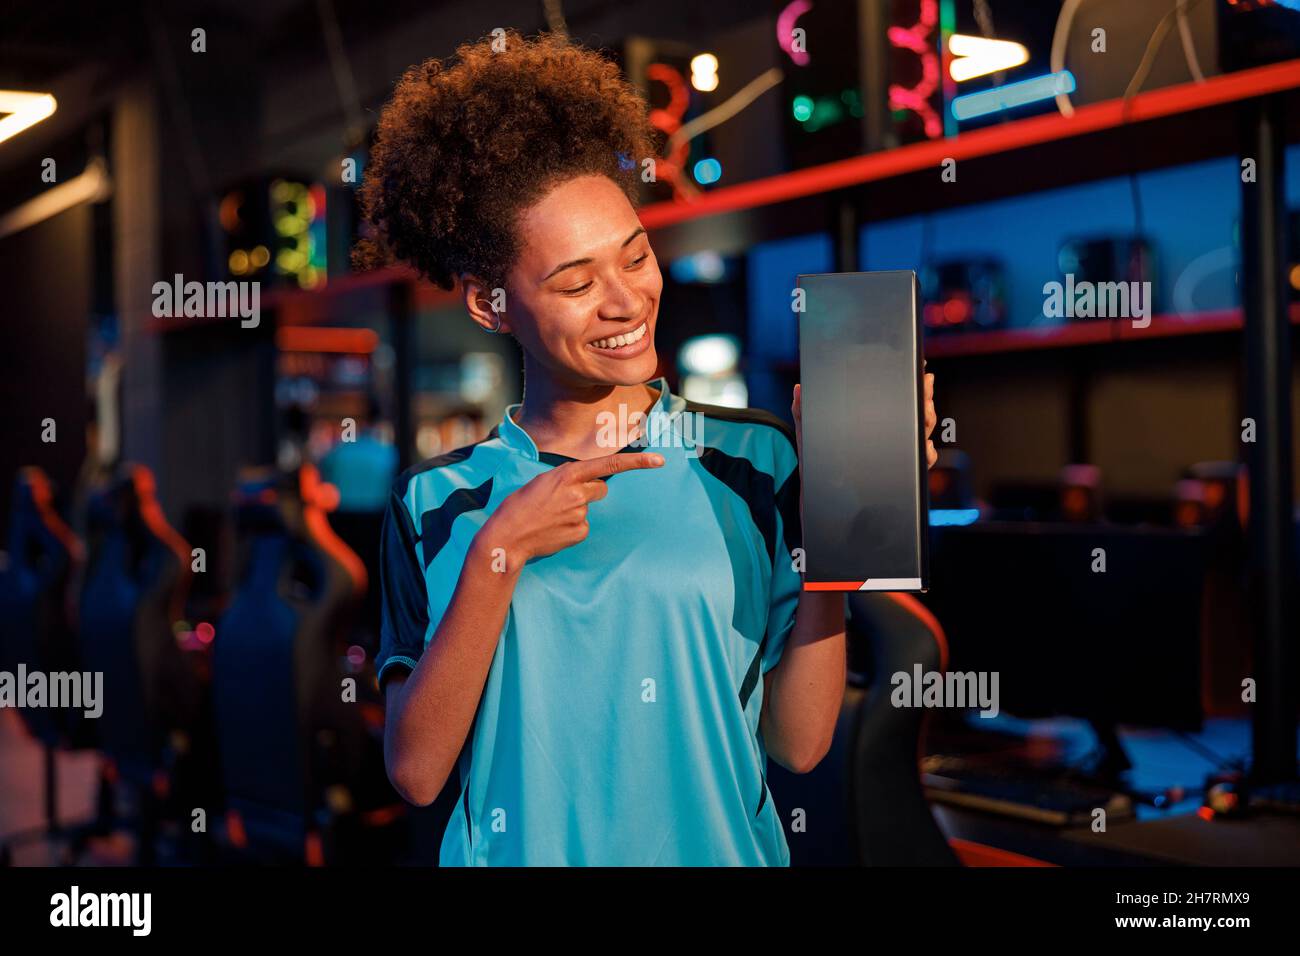 Une femme heureuse joue dans la salle du club de jeu Banque D'Images